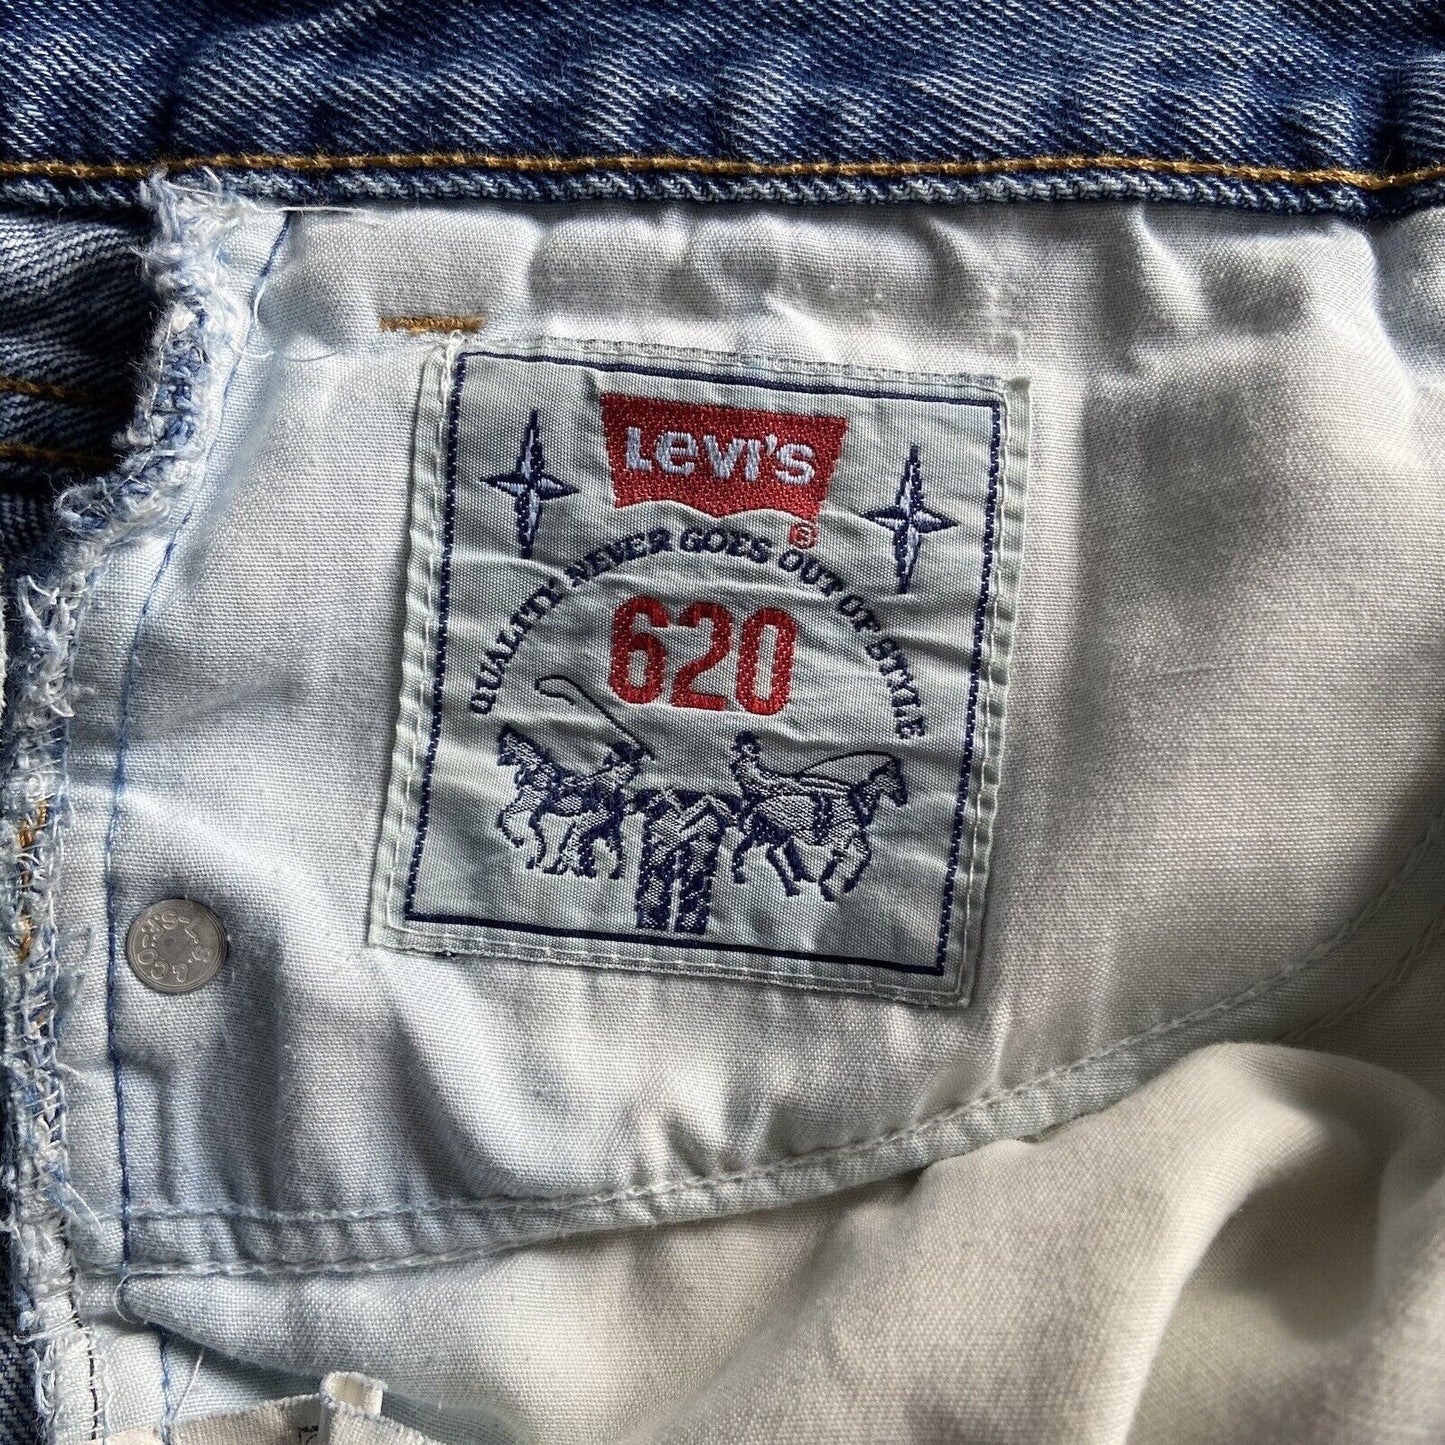 Vintage Levi’s 620 Jeans 80s Orange Tab W36 L30 Light Wash UK Made